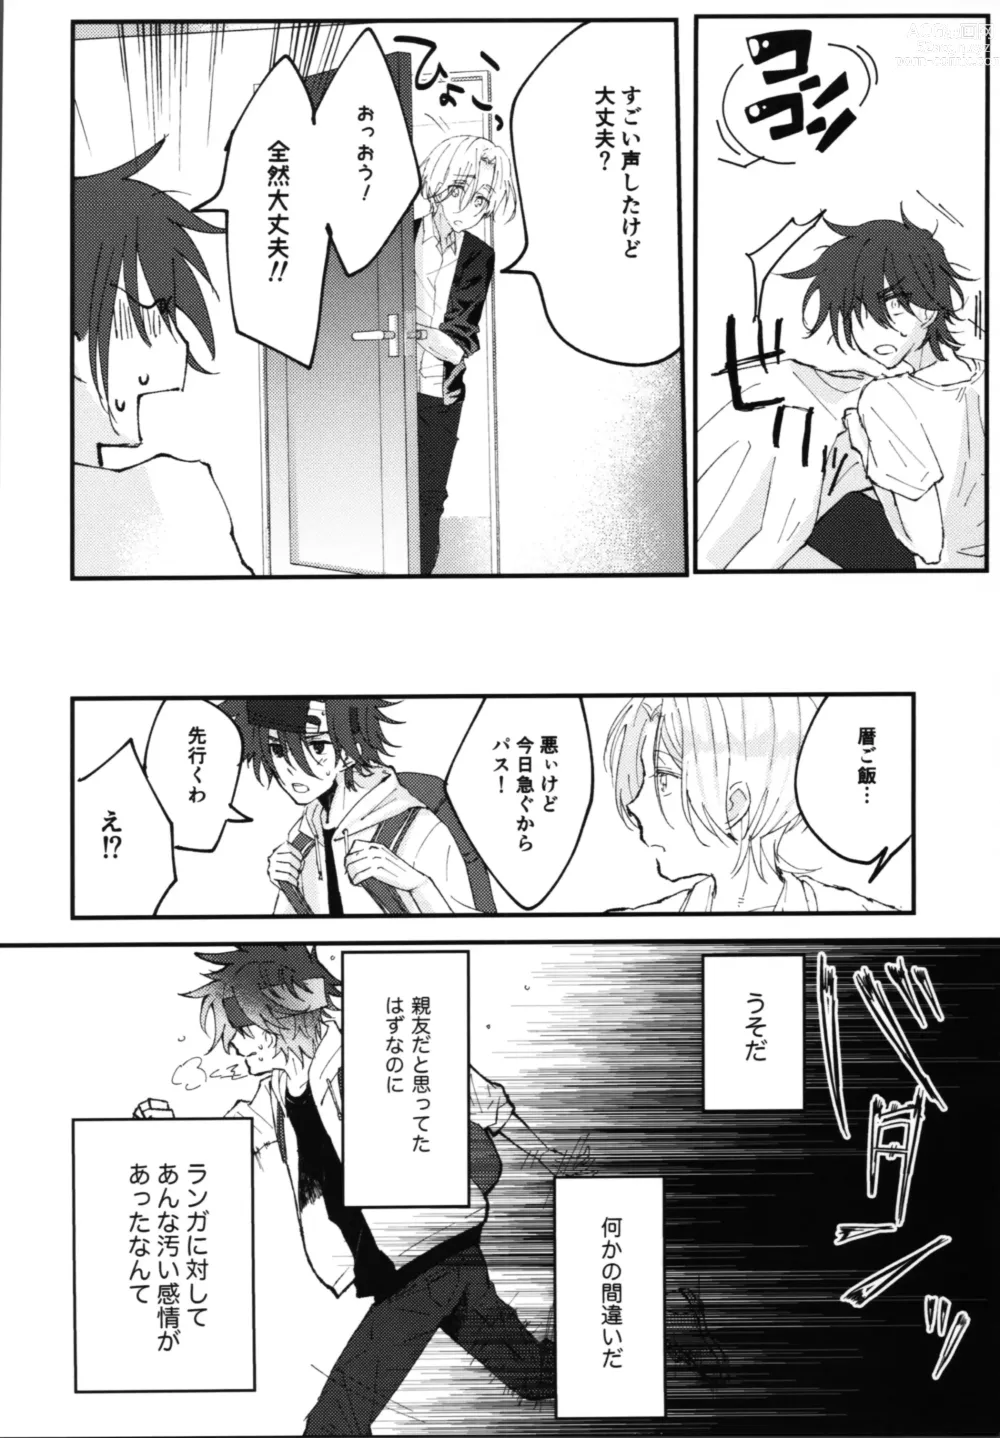 Page 9 of doujinshi Kimi no negao ni koishiteru